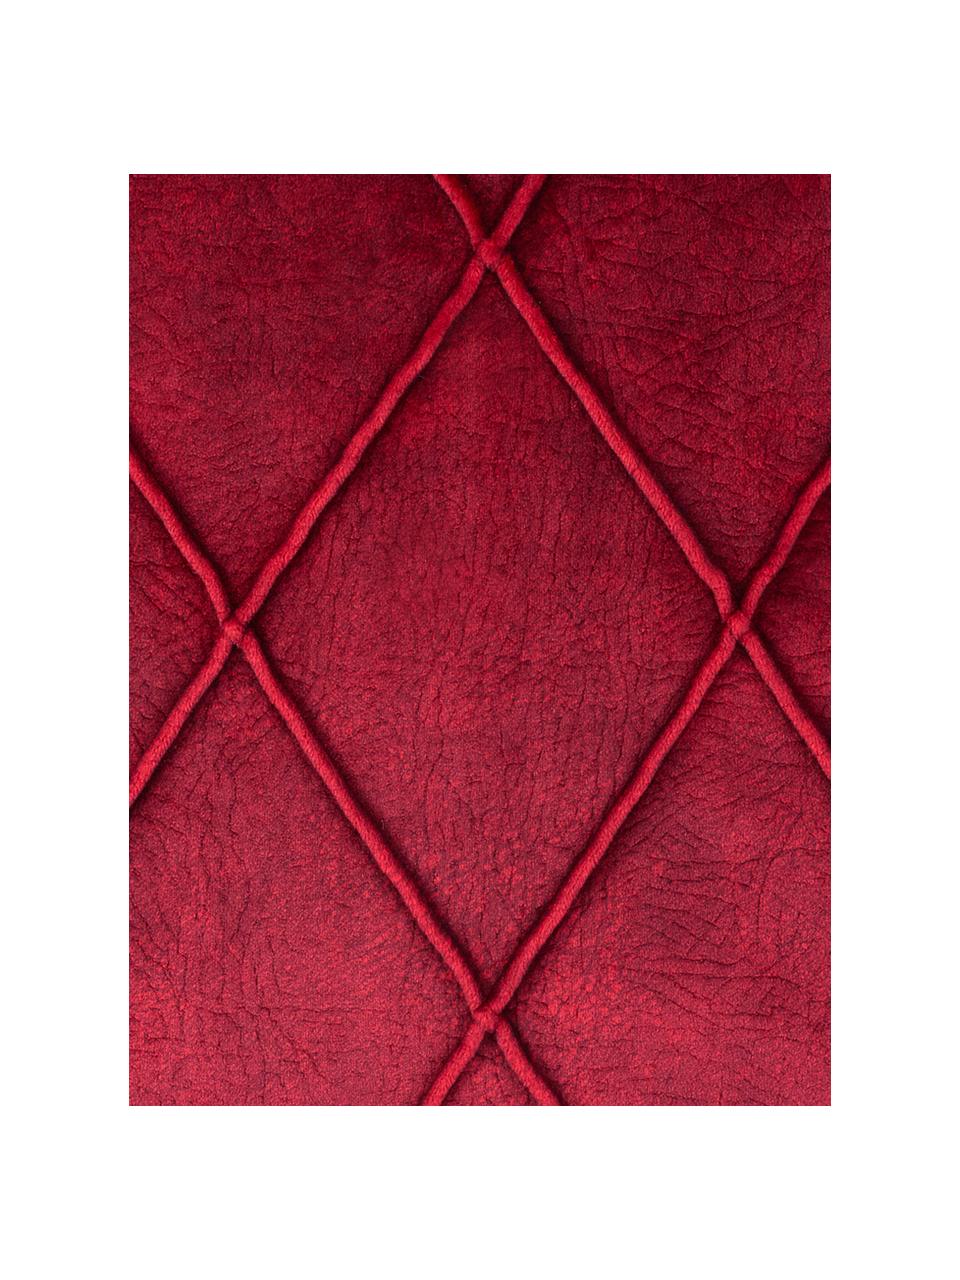 Poszewka na poduszkę Combo, Poliester, Ciemny czerwony, S 40 x D 40 cm